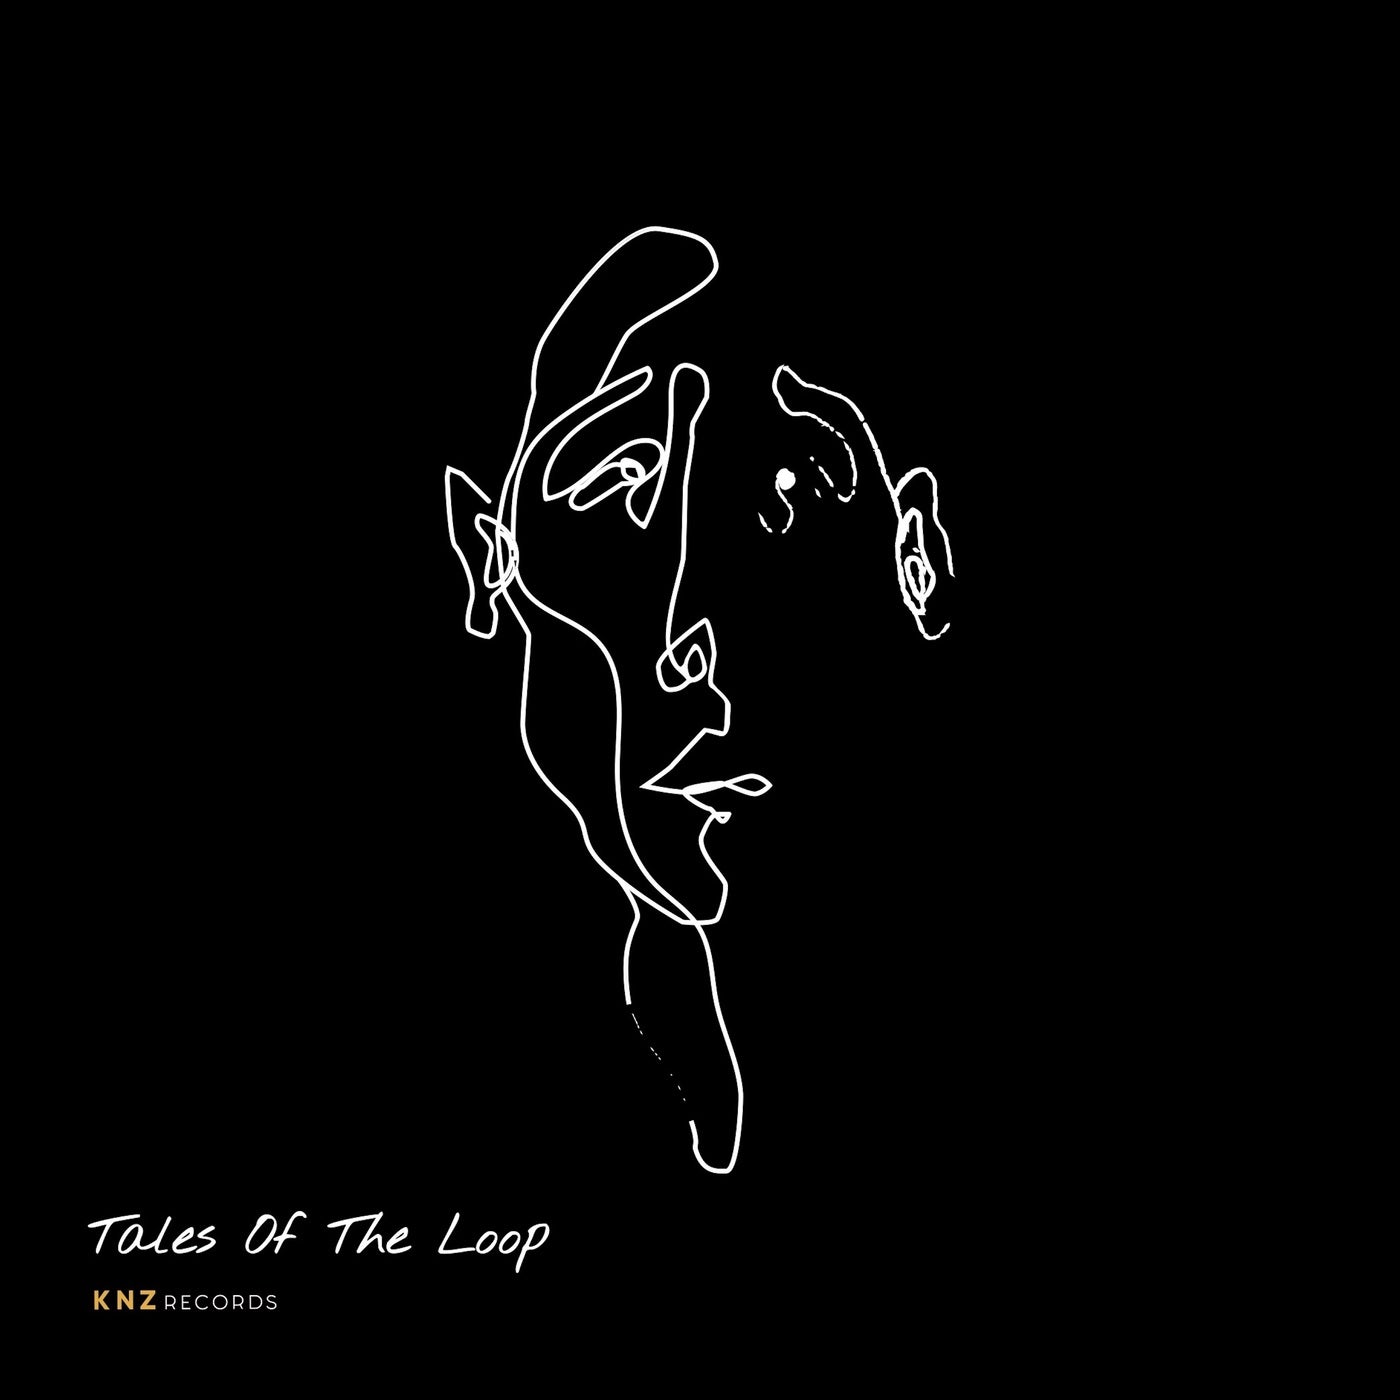 Tales of the Loop